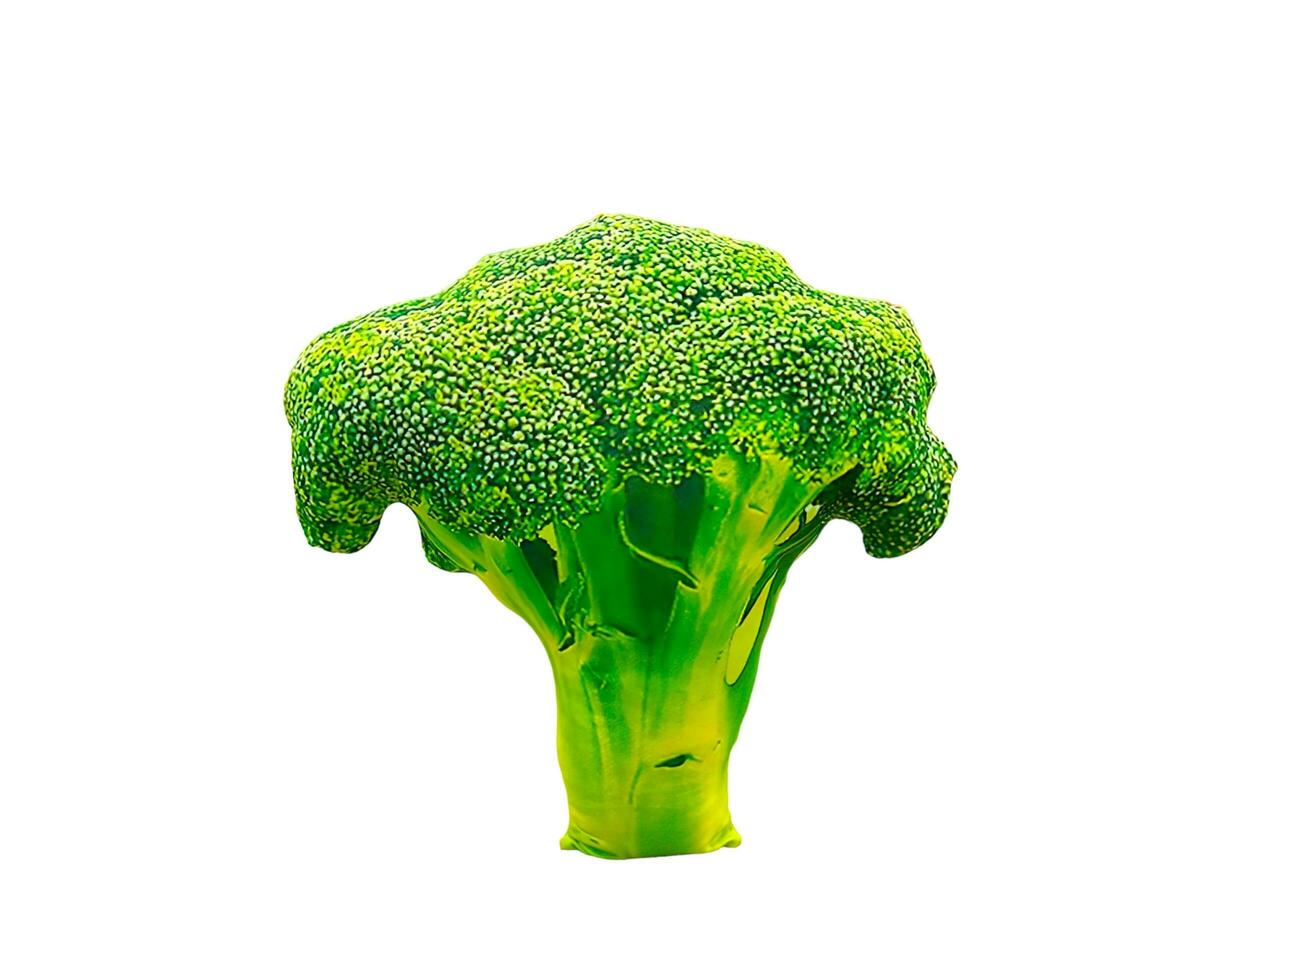 fylld broccoli vegetabiliska på en vit bakgrund foto